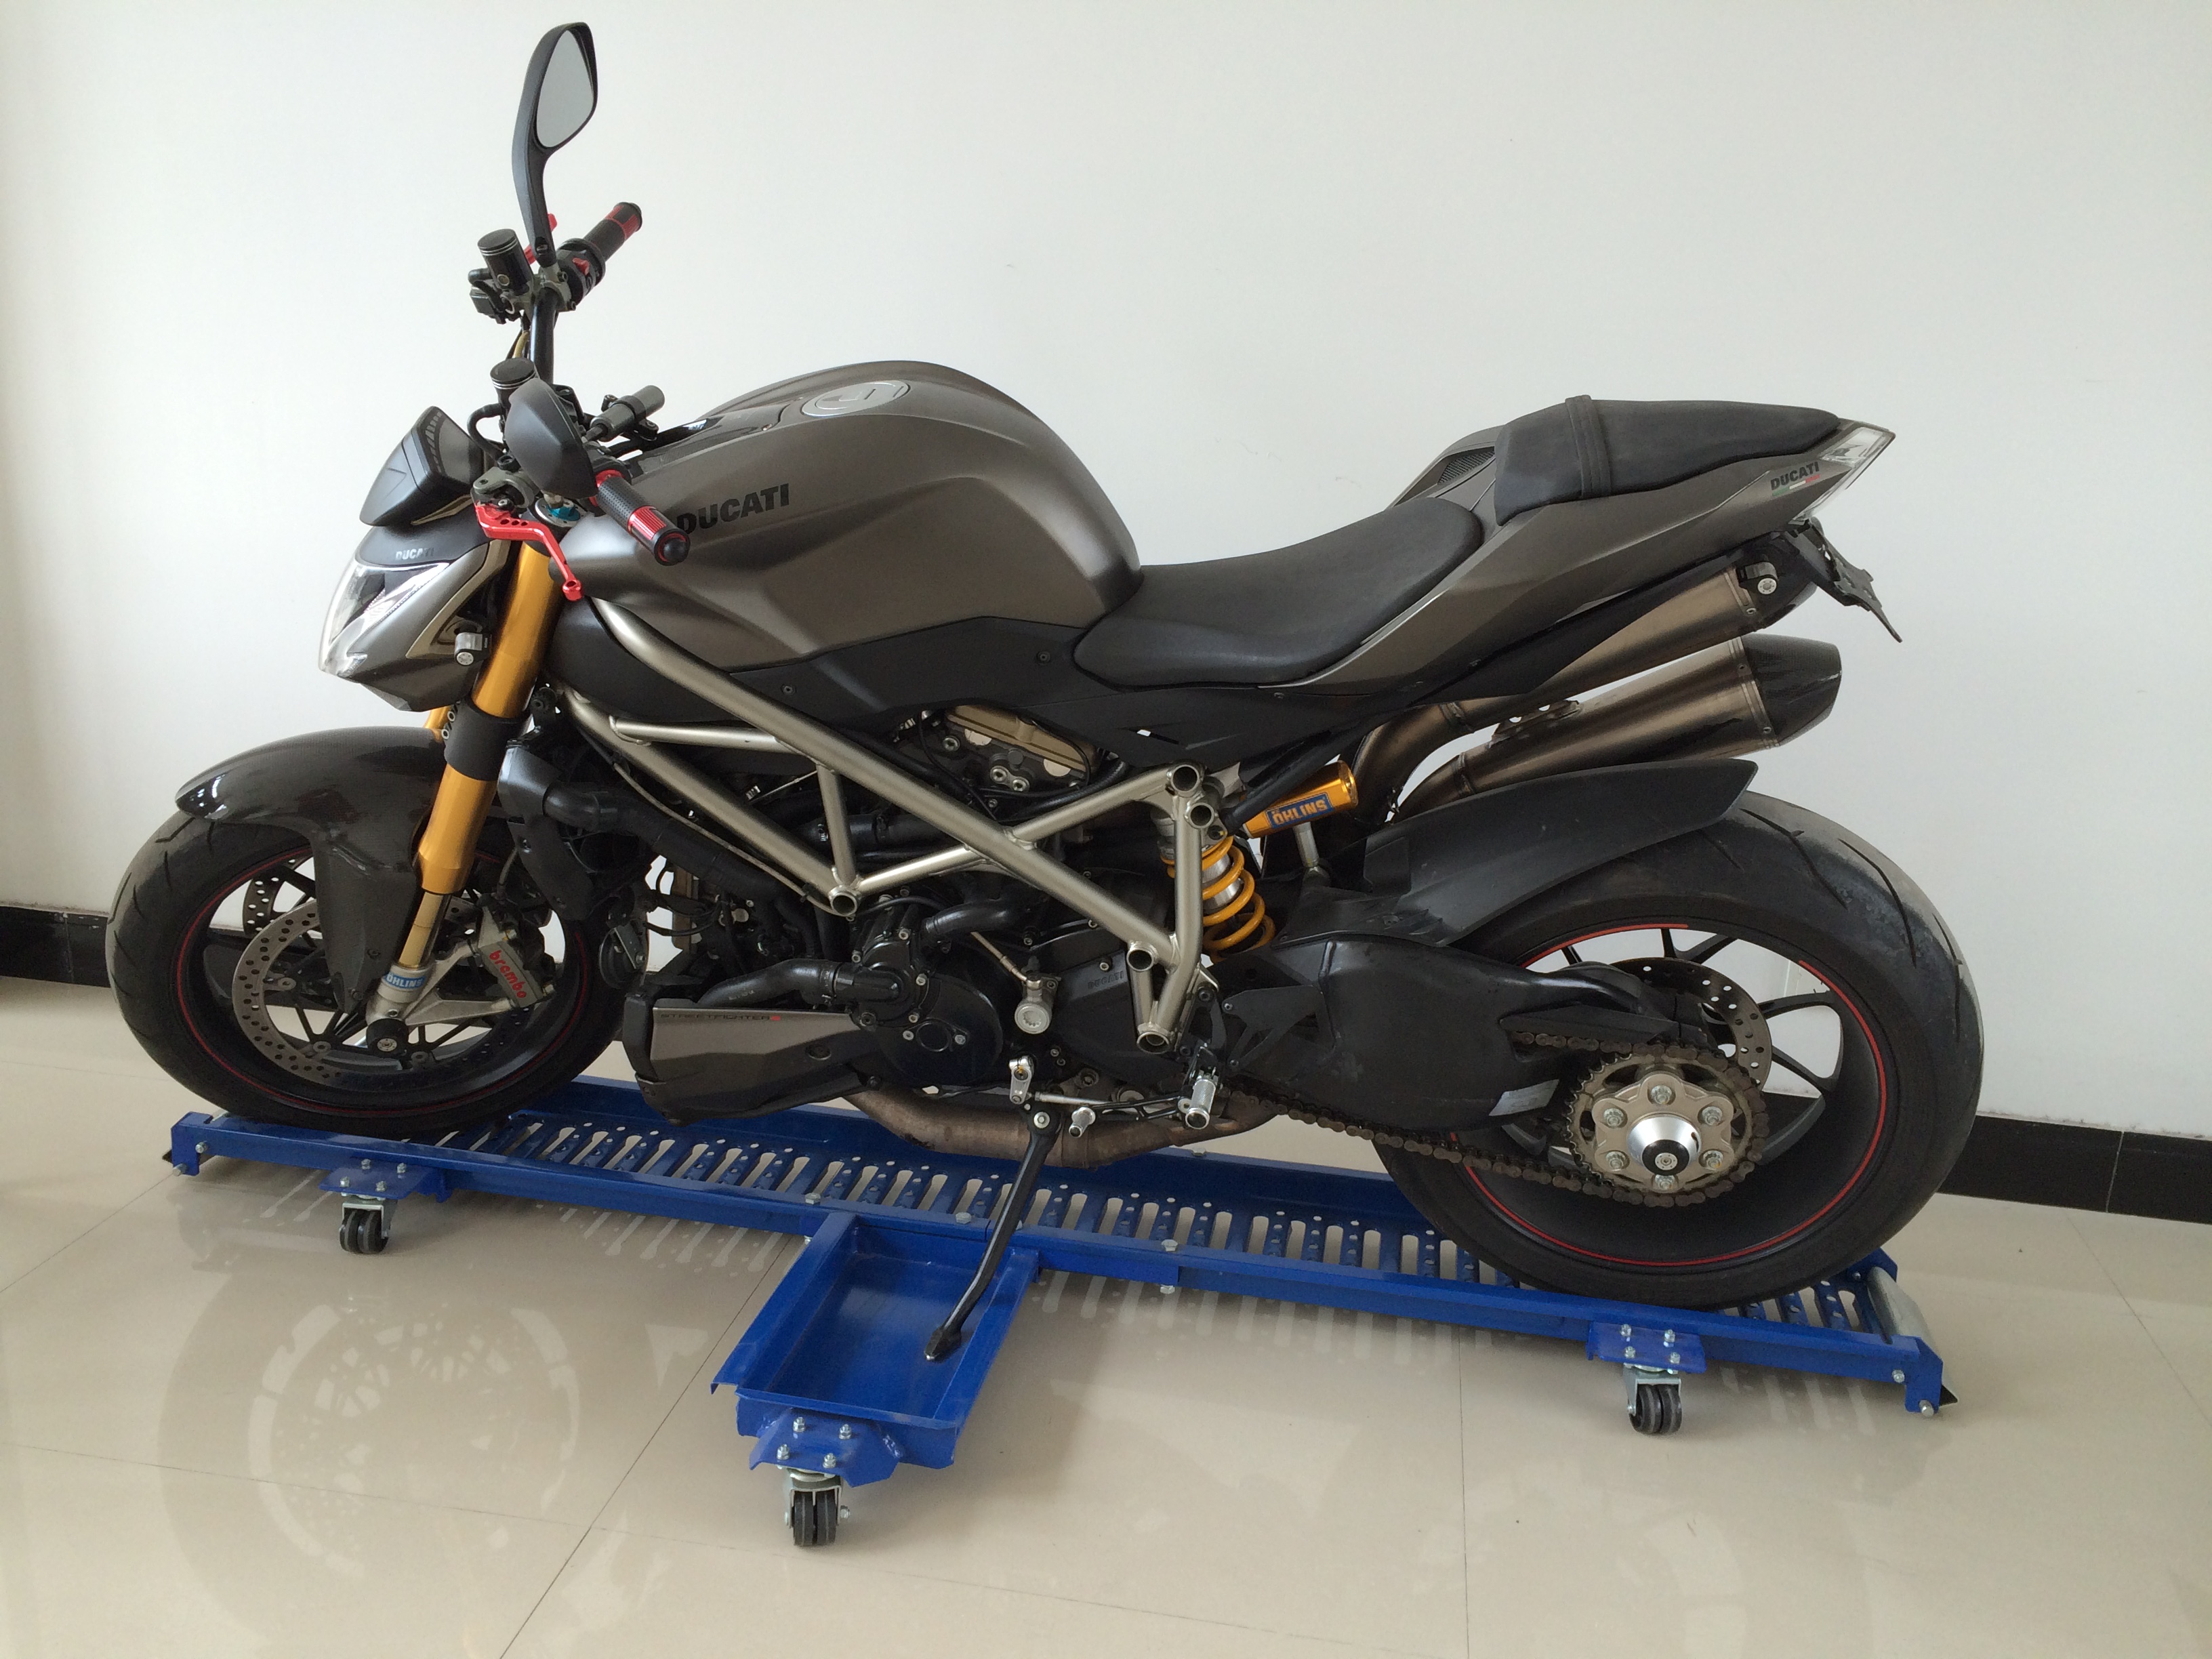 1250lb Motorcycle Barrow